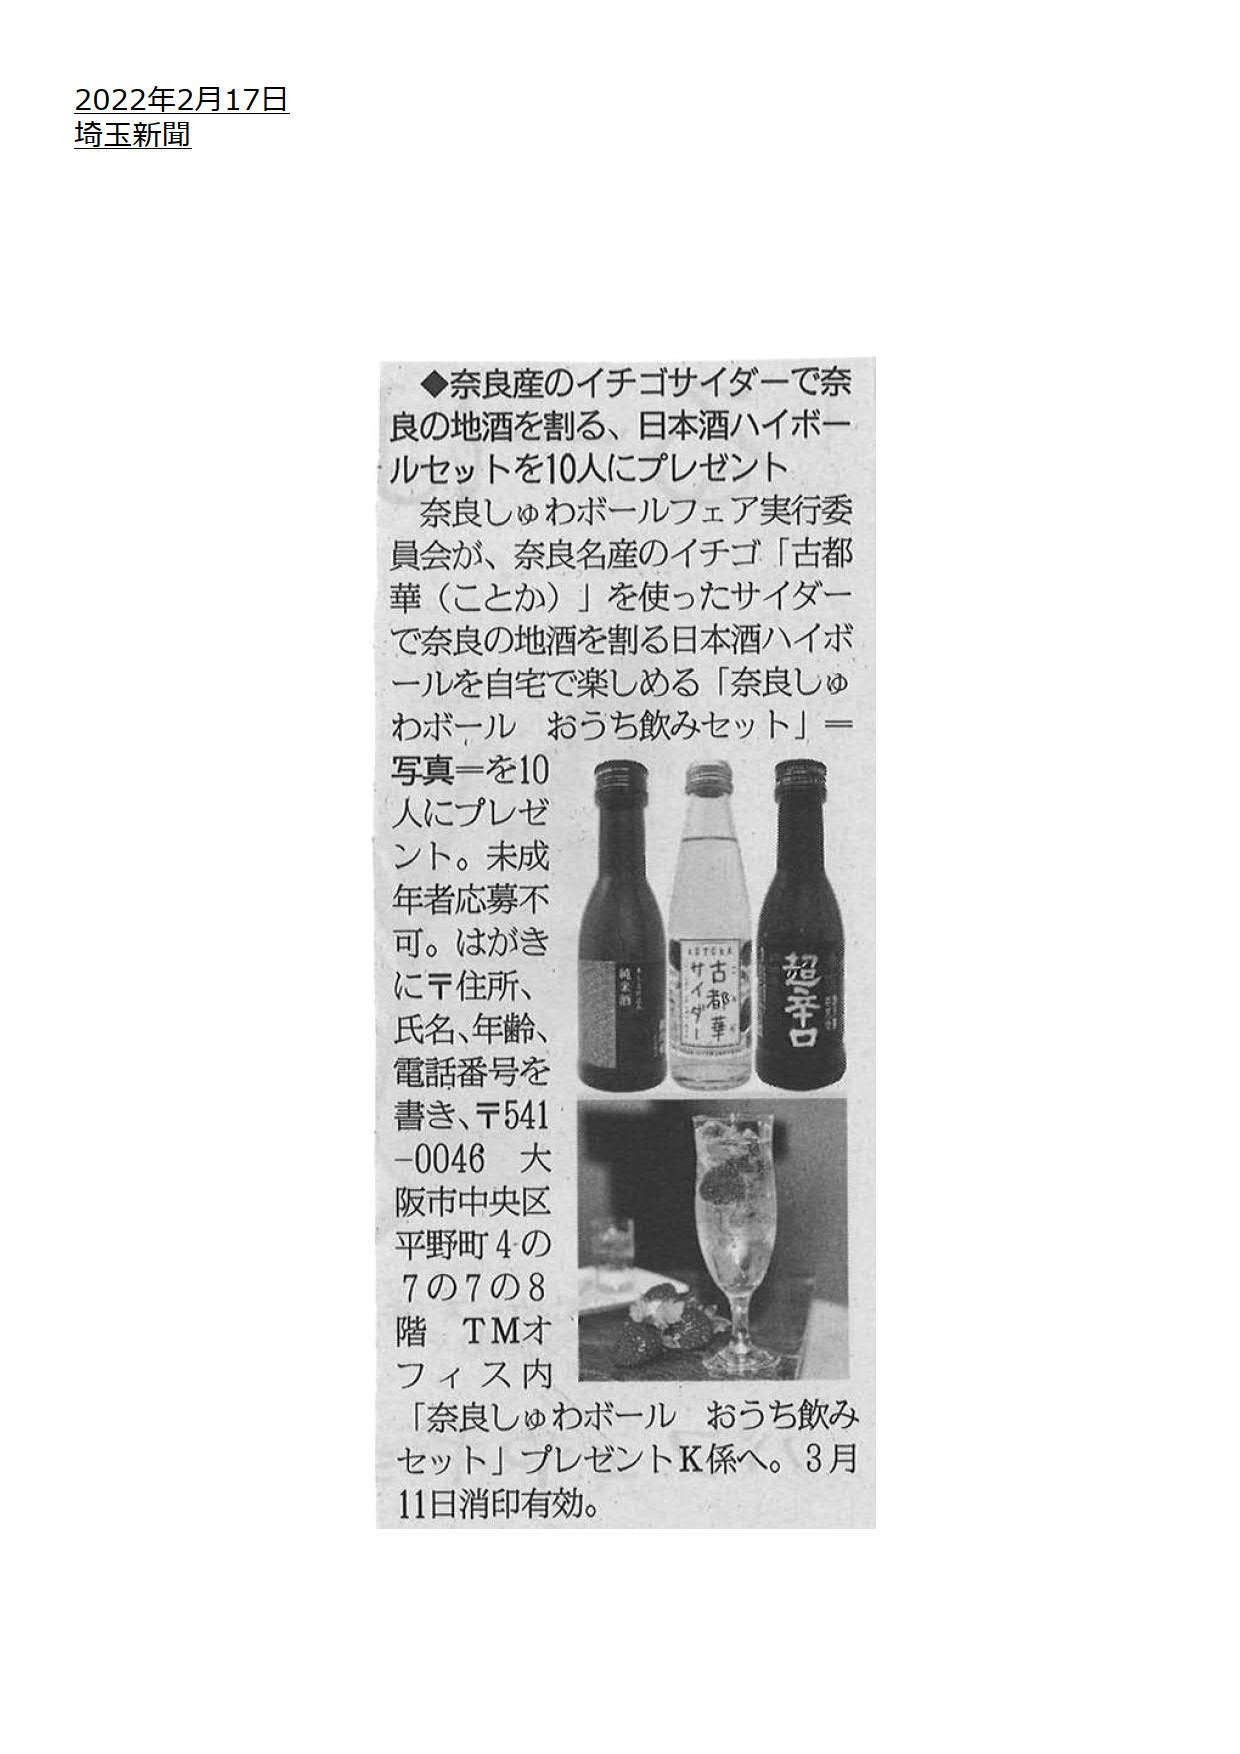 埼玉新聞に「奈良しゅわボール」が紹介されました！